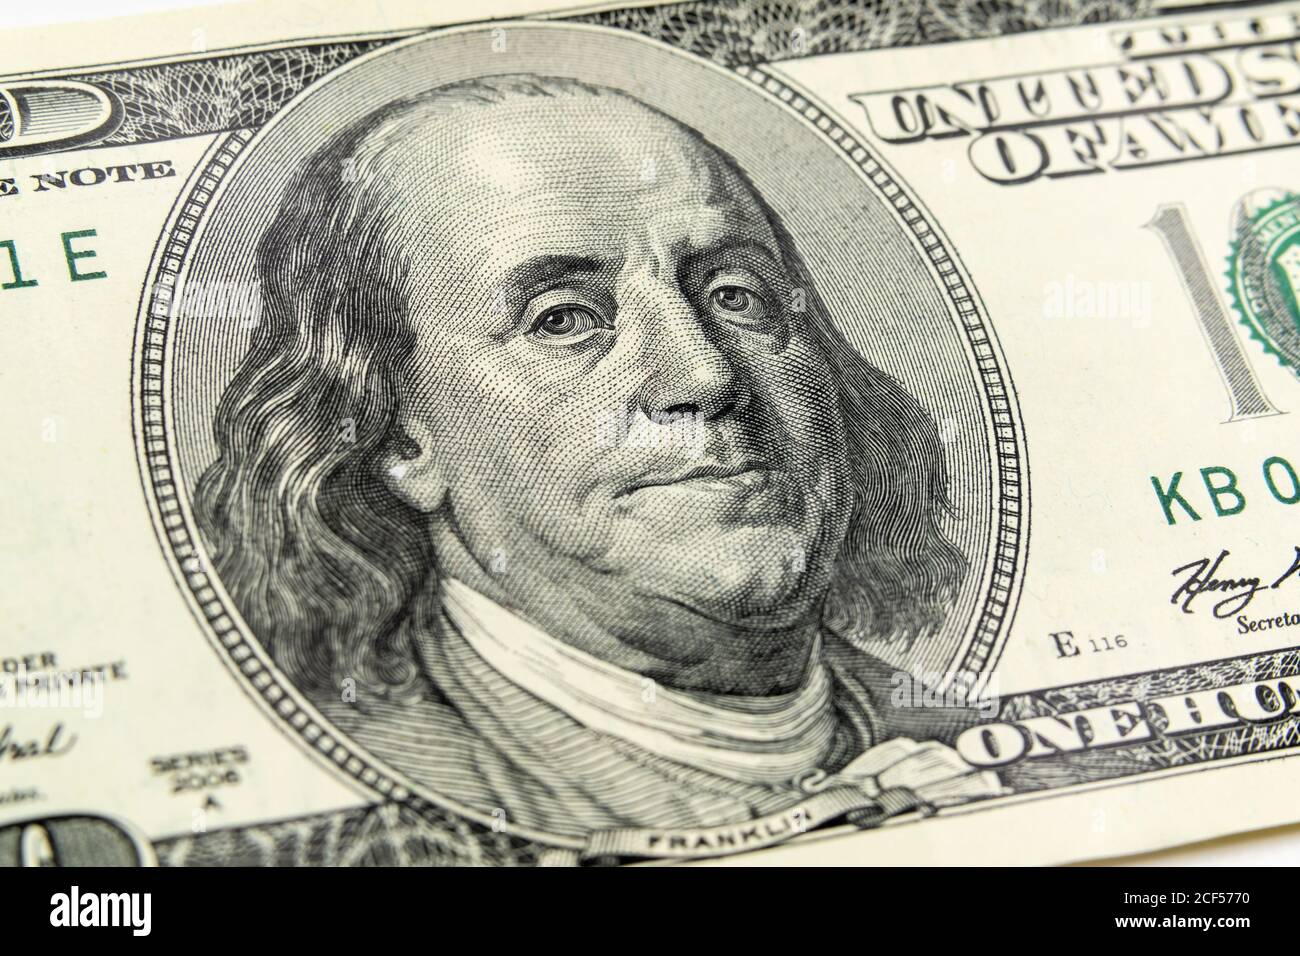 Vue macro de Ben Franklin sur la facture de cent dollars des États-Unis. Banque D'Images